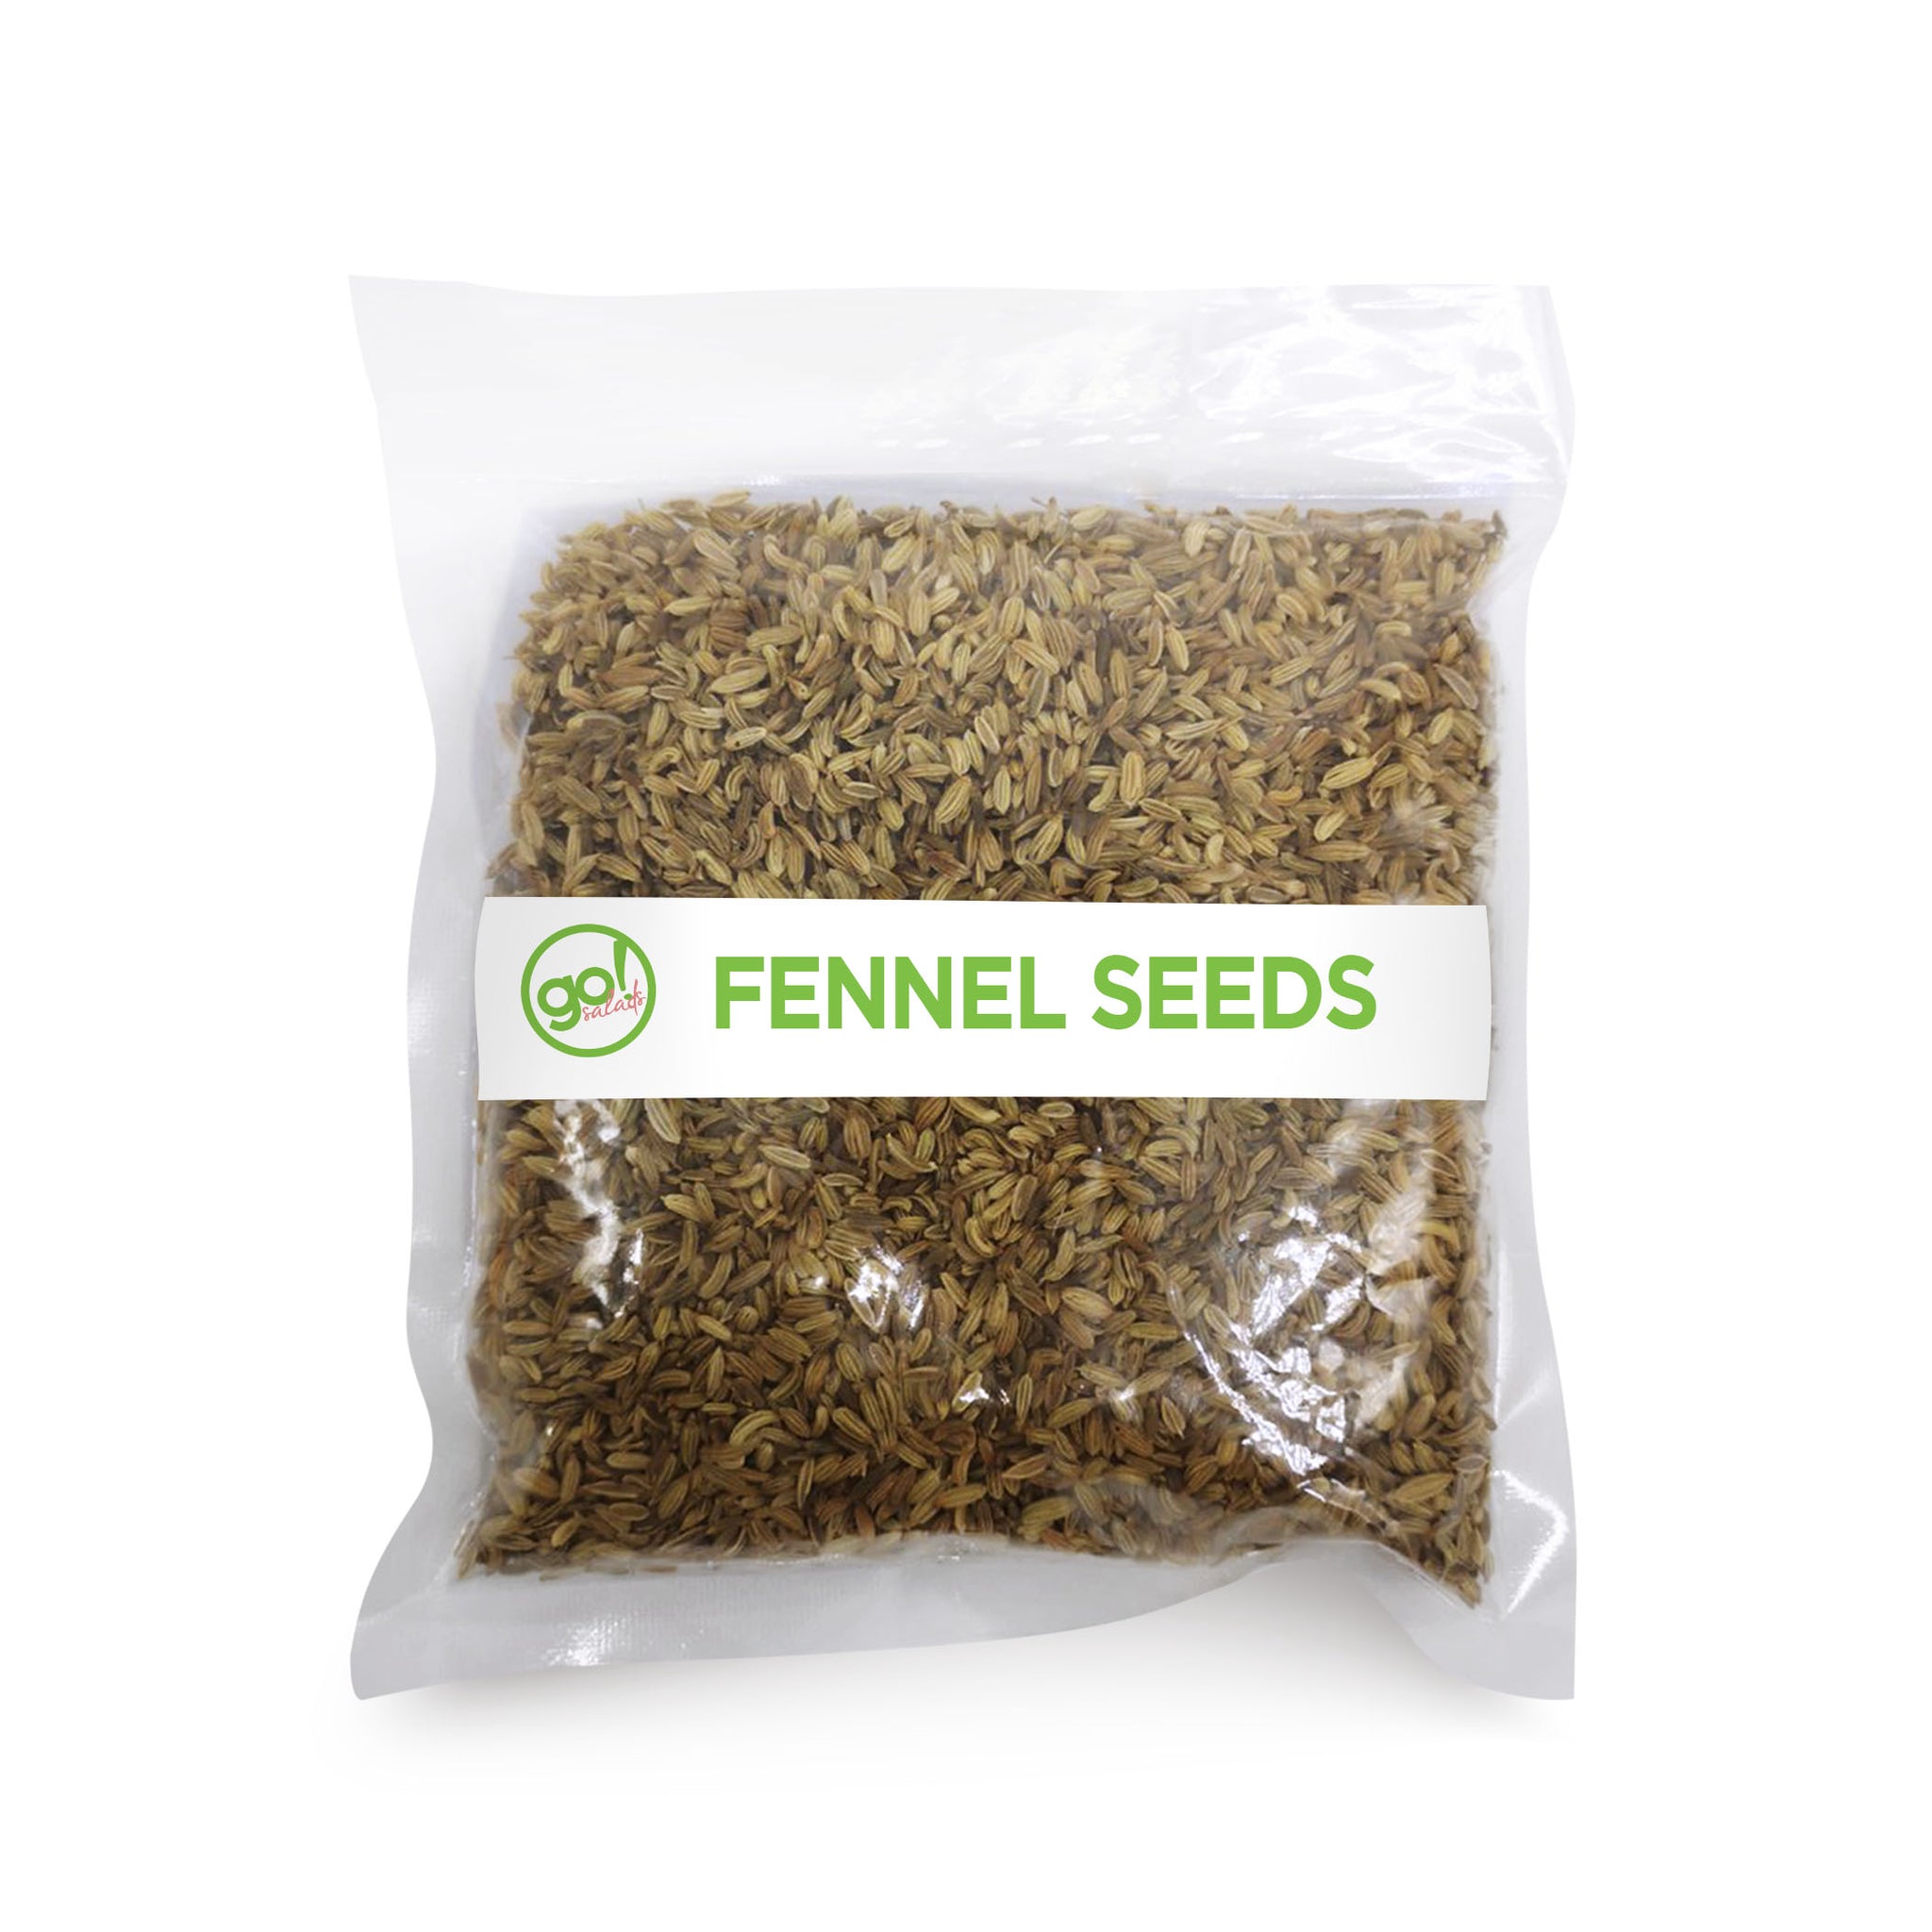 Fennel Seeds - Go! Salads Grocer